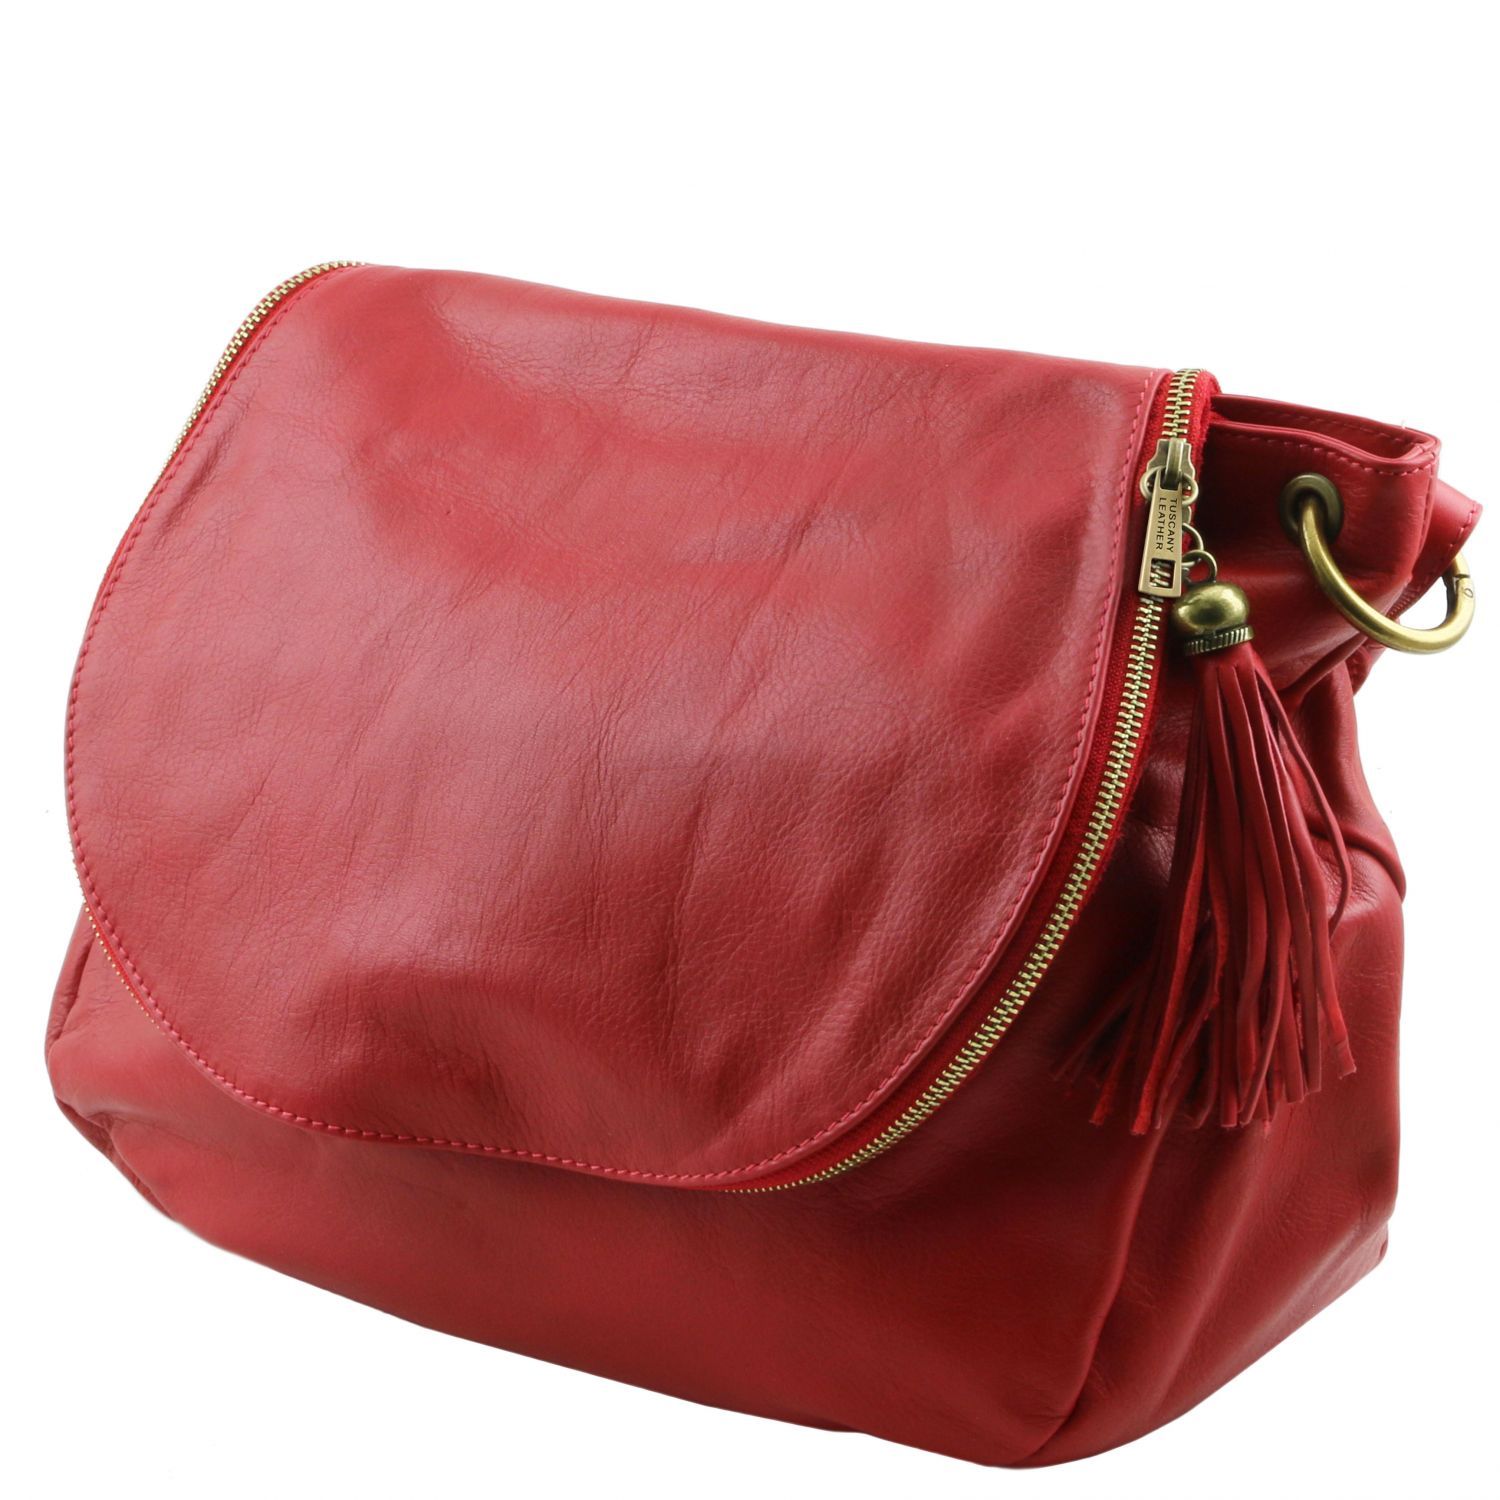 TL Bag - Sac bandoulière besace en cuir souple avec pompon - Rouge (TL141110)